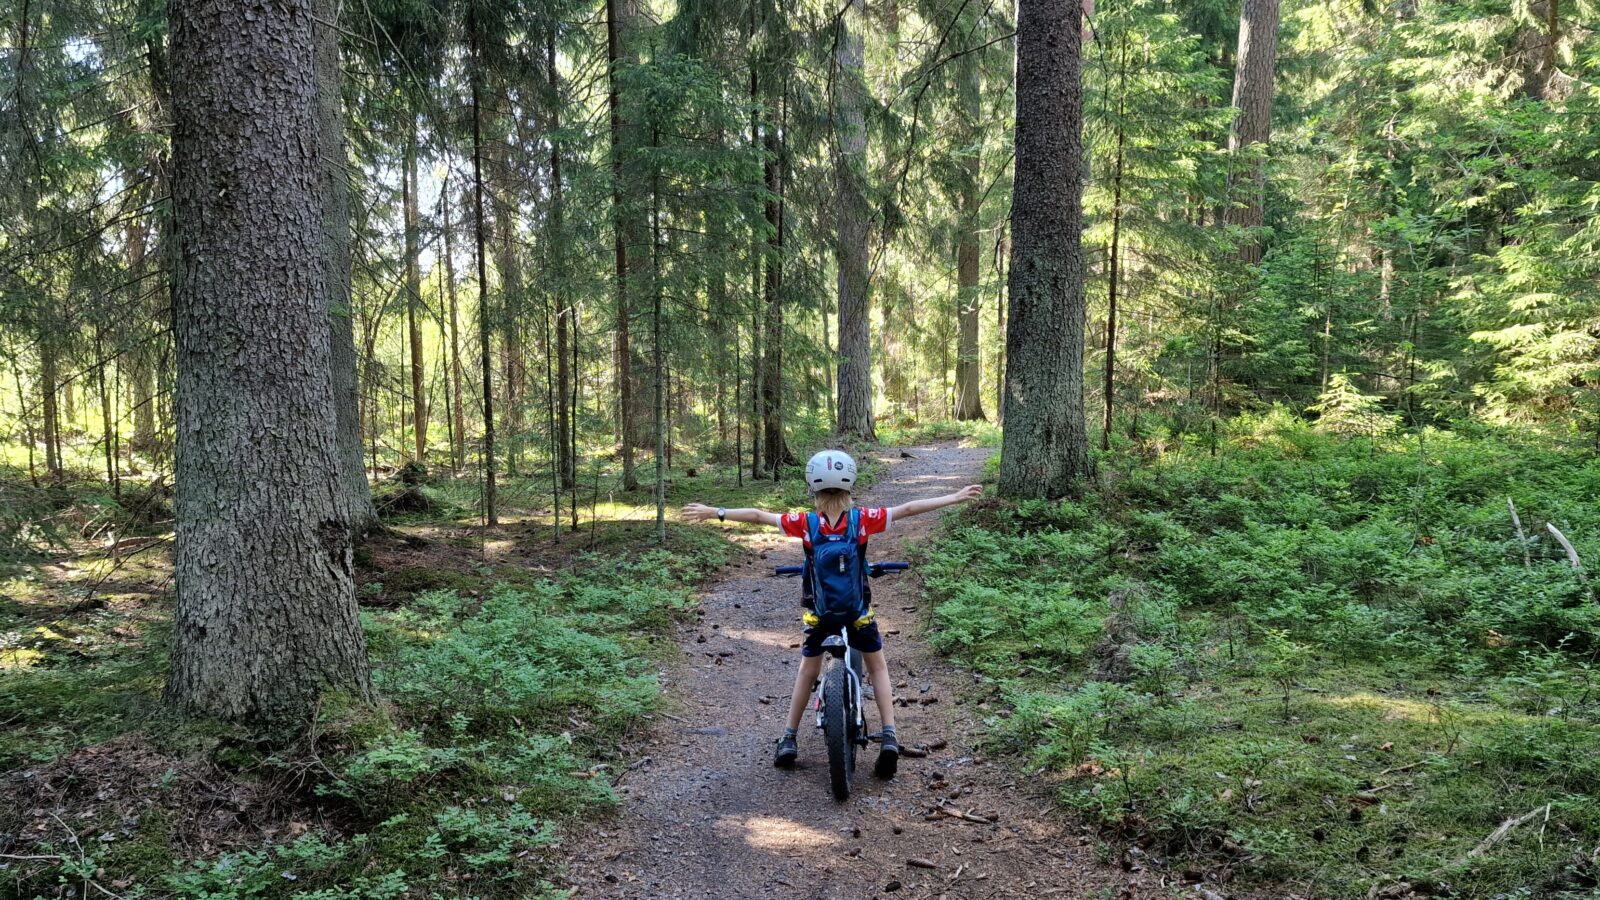 Kuvituskuva, jossa näkyy metsämaisema sekä lapsi pyörän kanssa metsäpolulla.